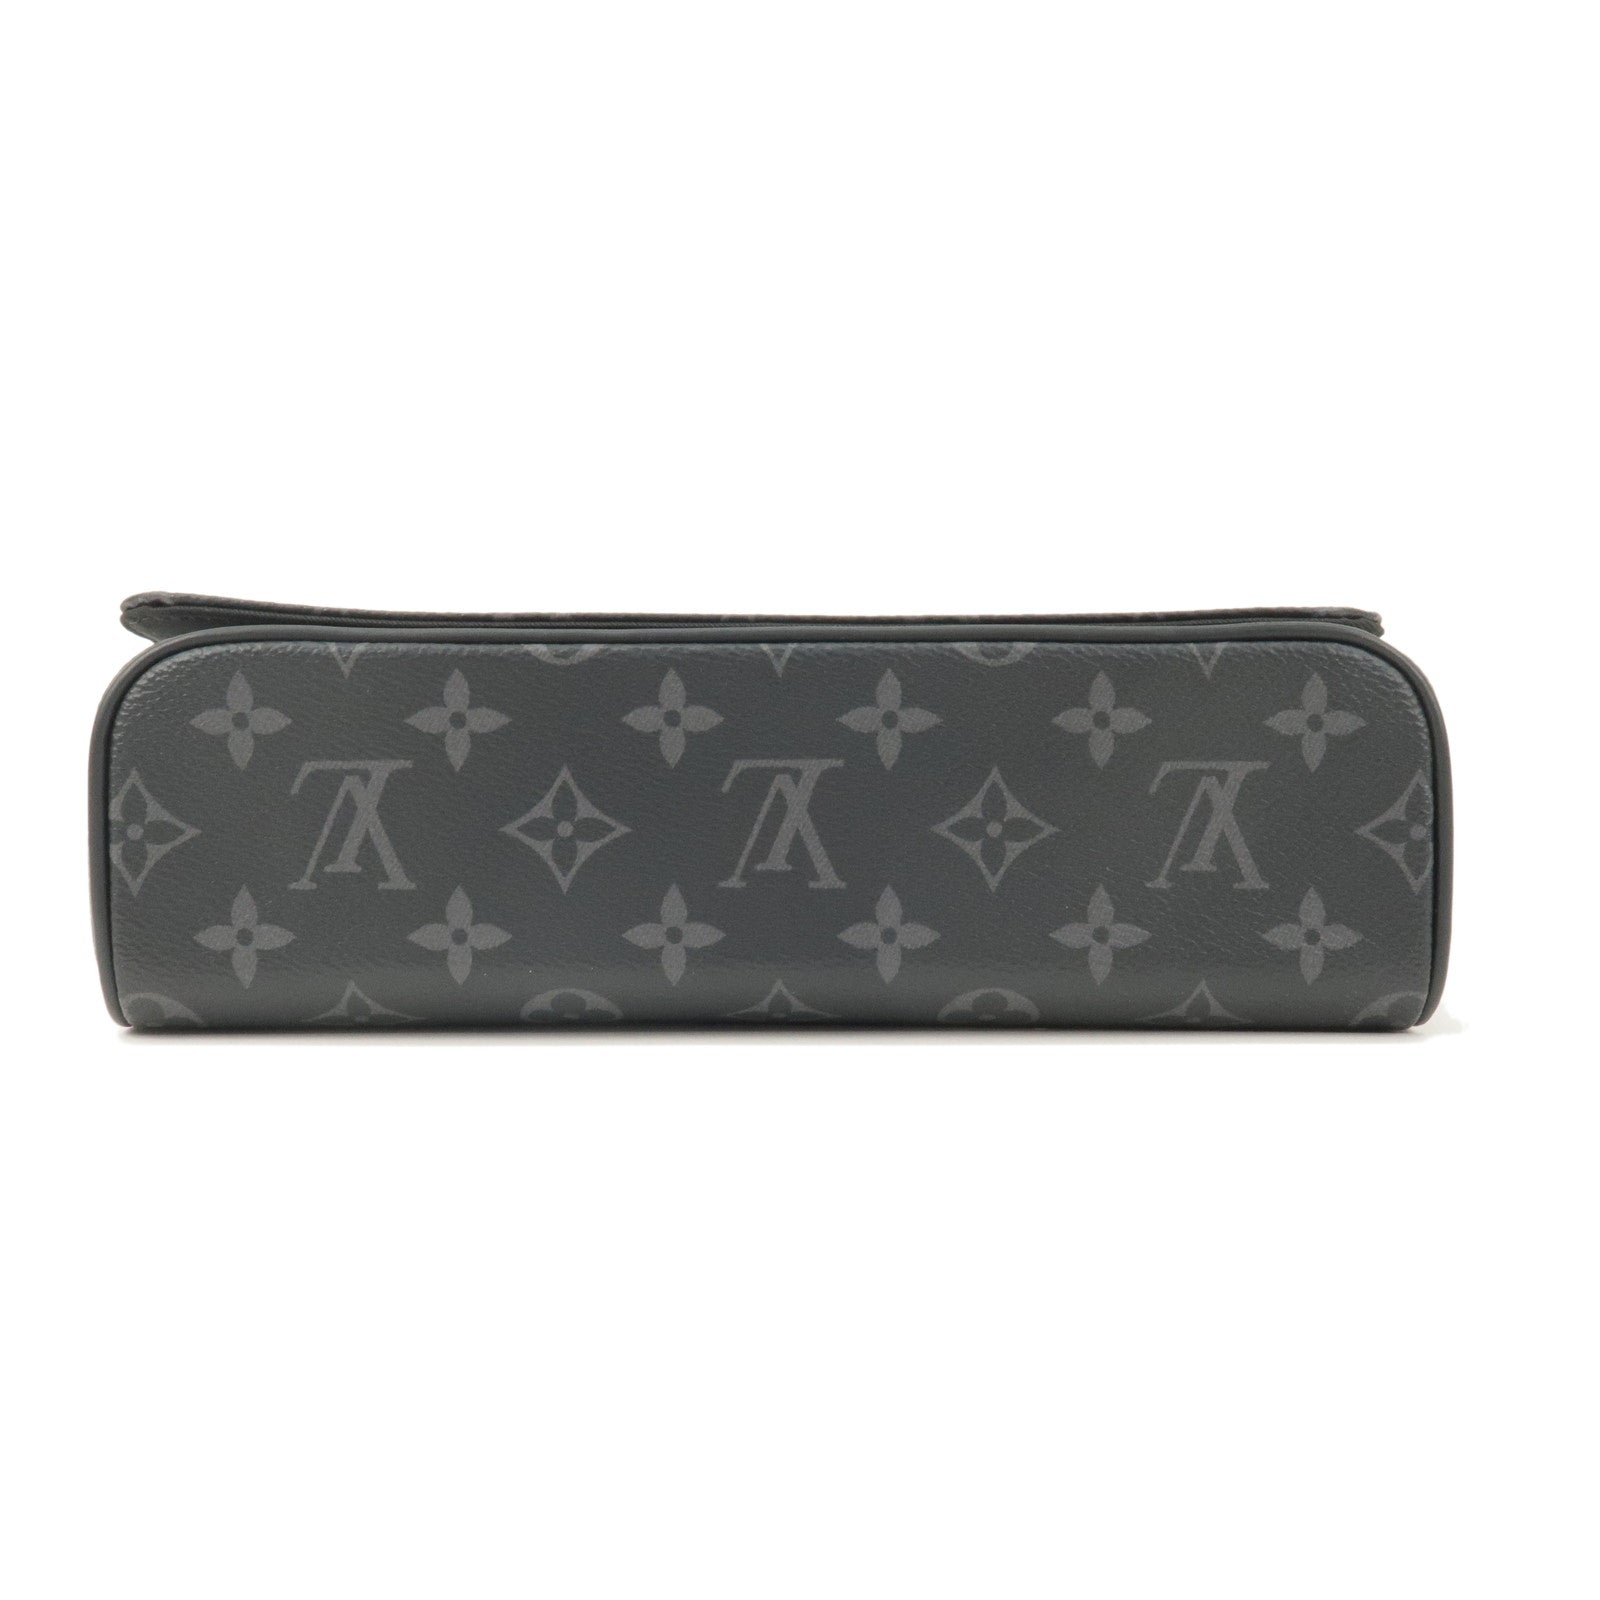 Louis Vuitton, Bags, Louis Vuitton Monogram Elizabeth Pencil Pouch